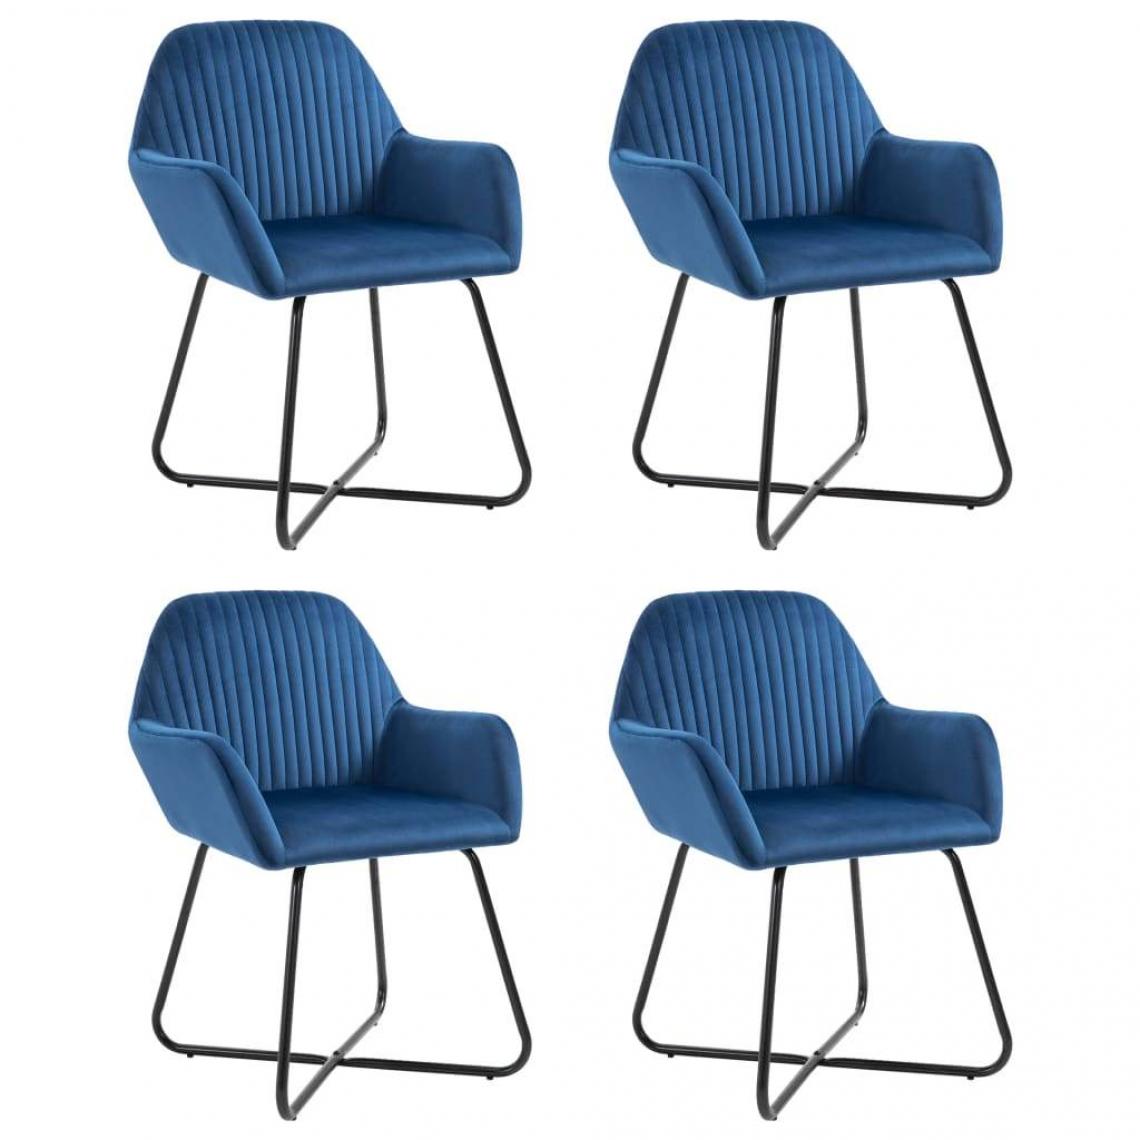 Decoshop26 - Lot de 4 chaises de salle à manger cuisine design moderne velours bleu CDS021316 - Chaises